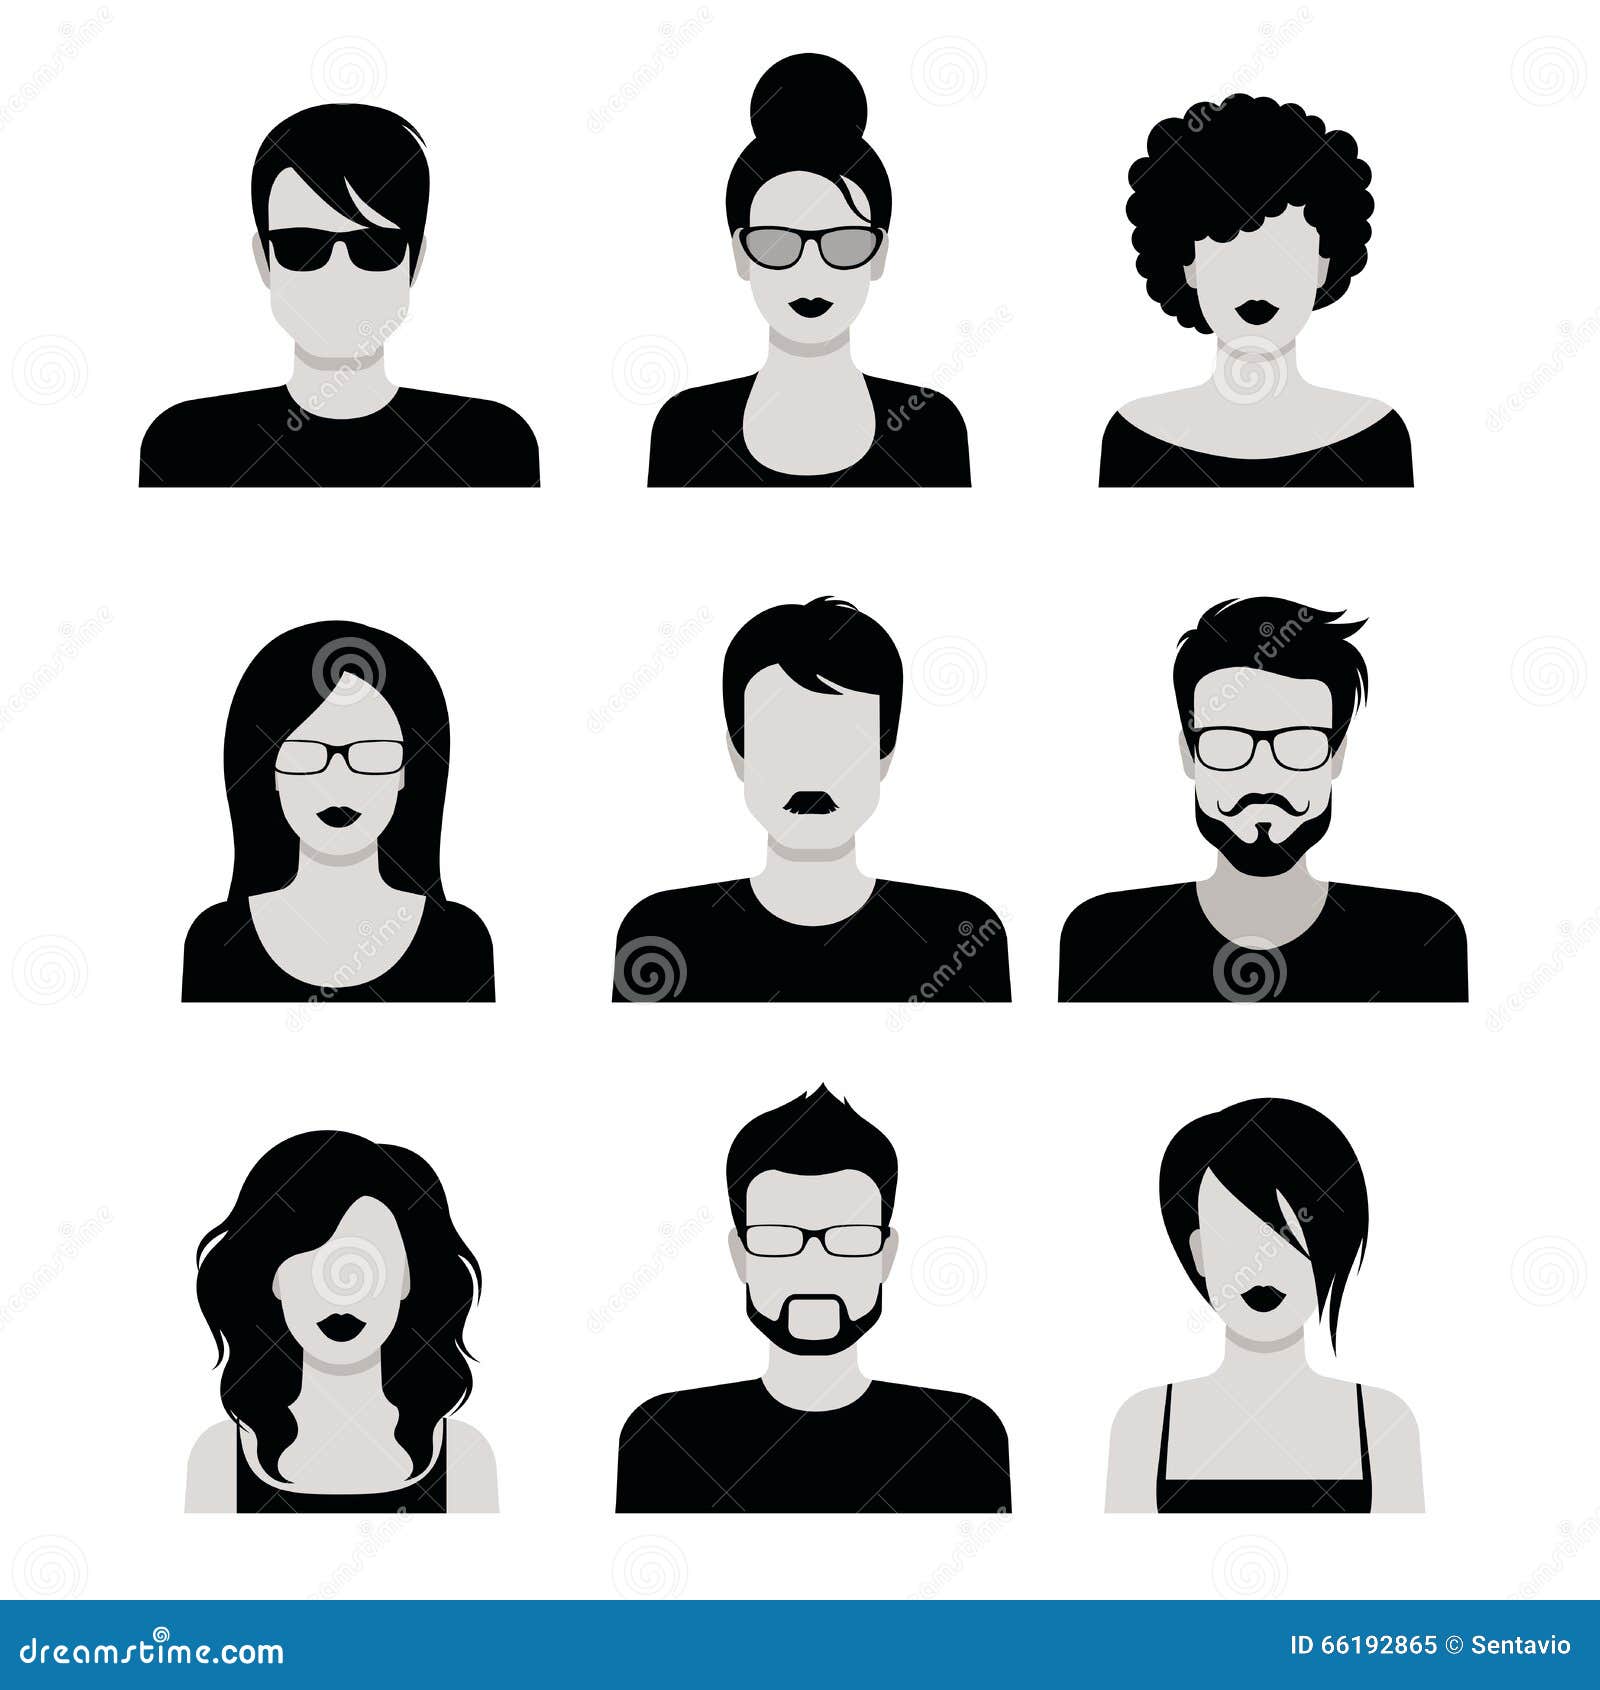 Biểu tượng avatar đen trắng phẳng của con người đang trở thành xu hướng trong thiết kế. Kết hợp với kiểu tóc được thiết kế độc đáo, các avatar này giúp thể hiện được cá tính và phong cách của người dùng. Những biểu tượng avatar kiểu tóc sẽ giúp người dùng nổi bật hơn trong cộng đồng.